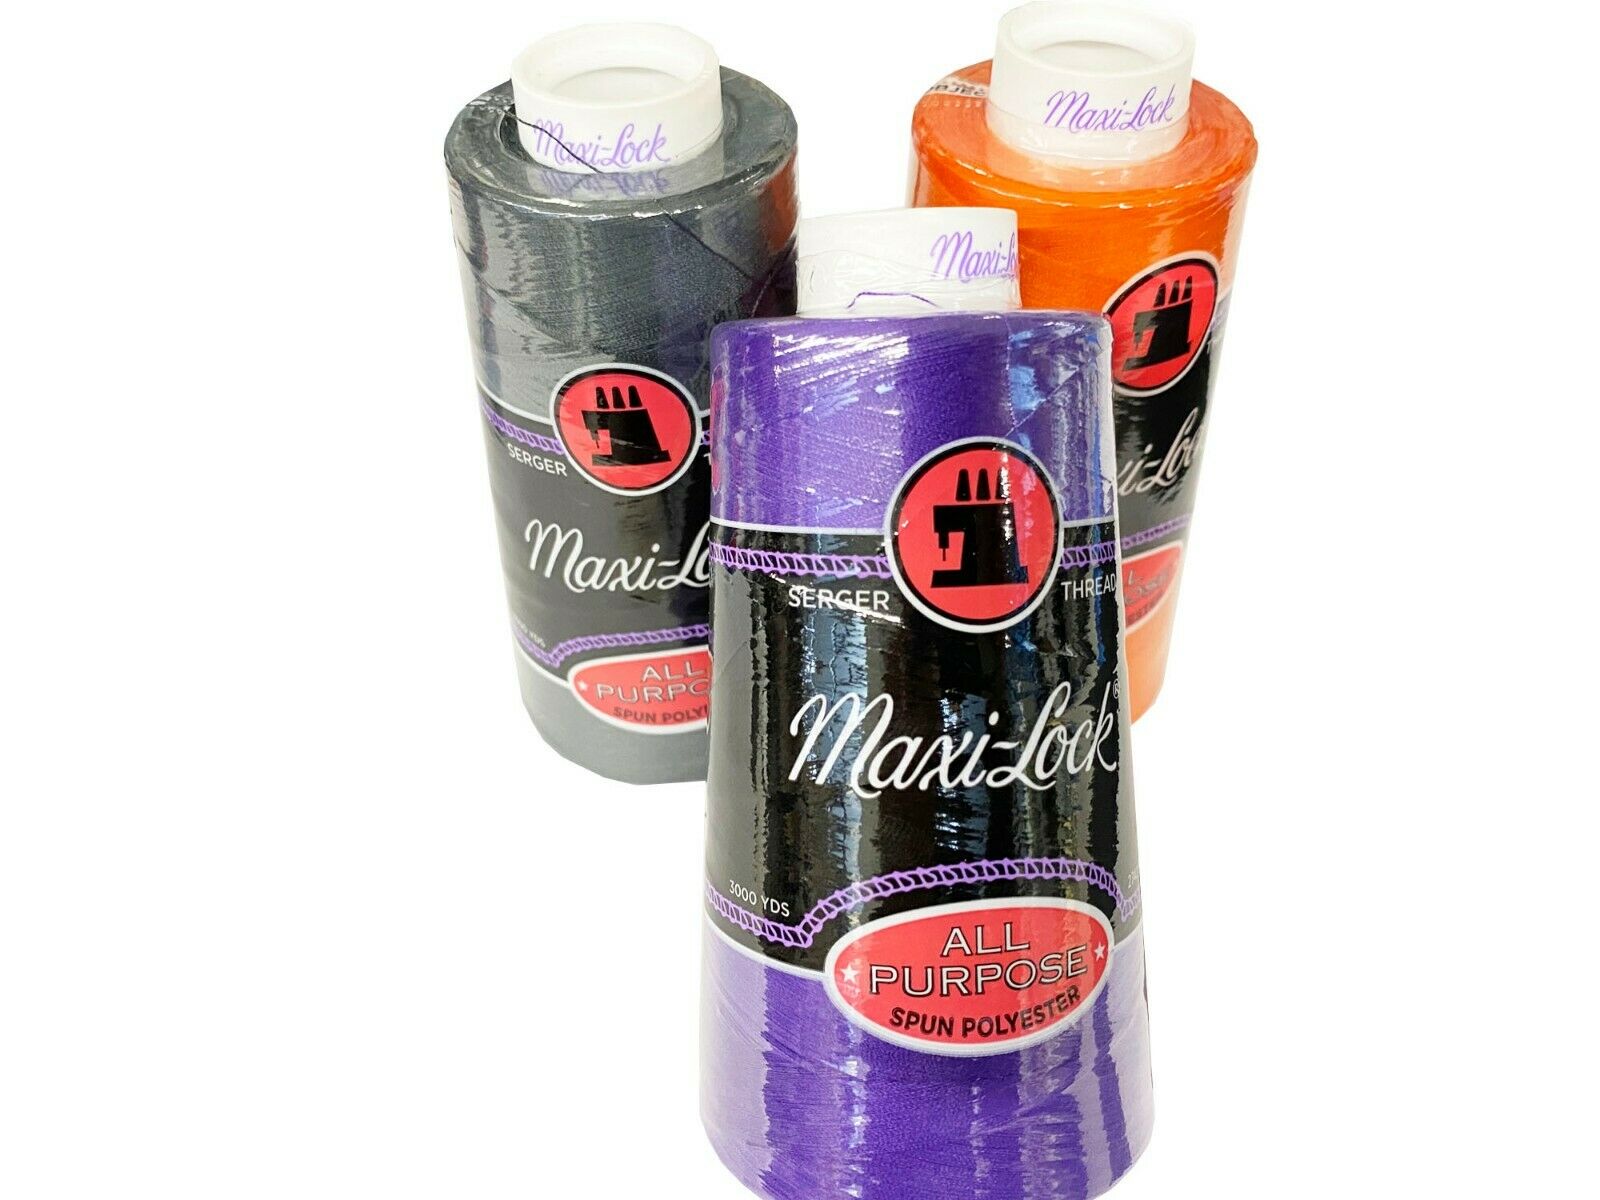 Maxi-lock All-purpose Serger Thread Tex 27 - 3000 Yard Cone - Pick Color